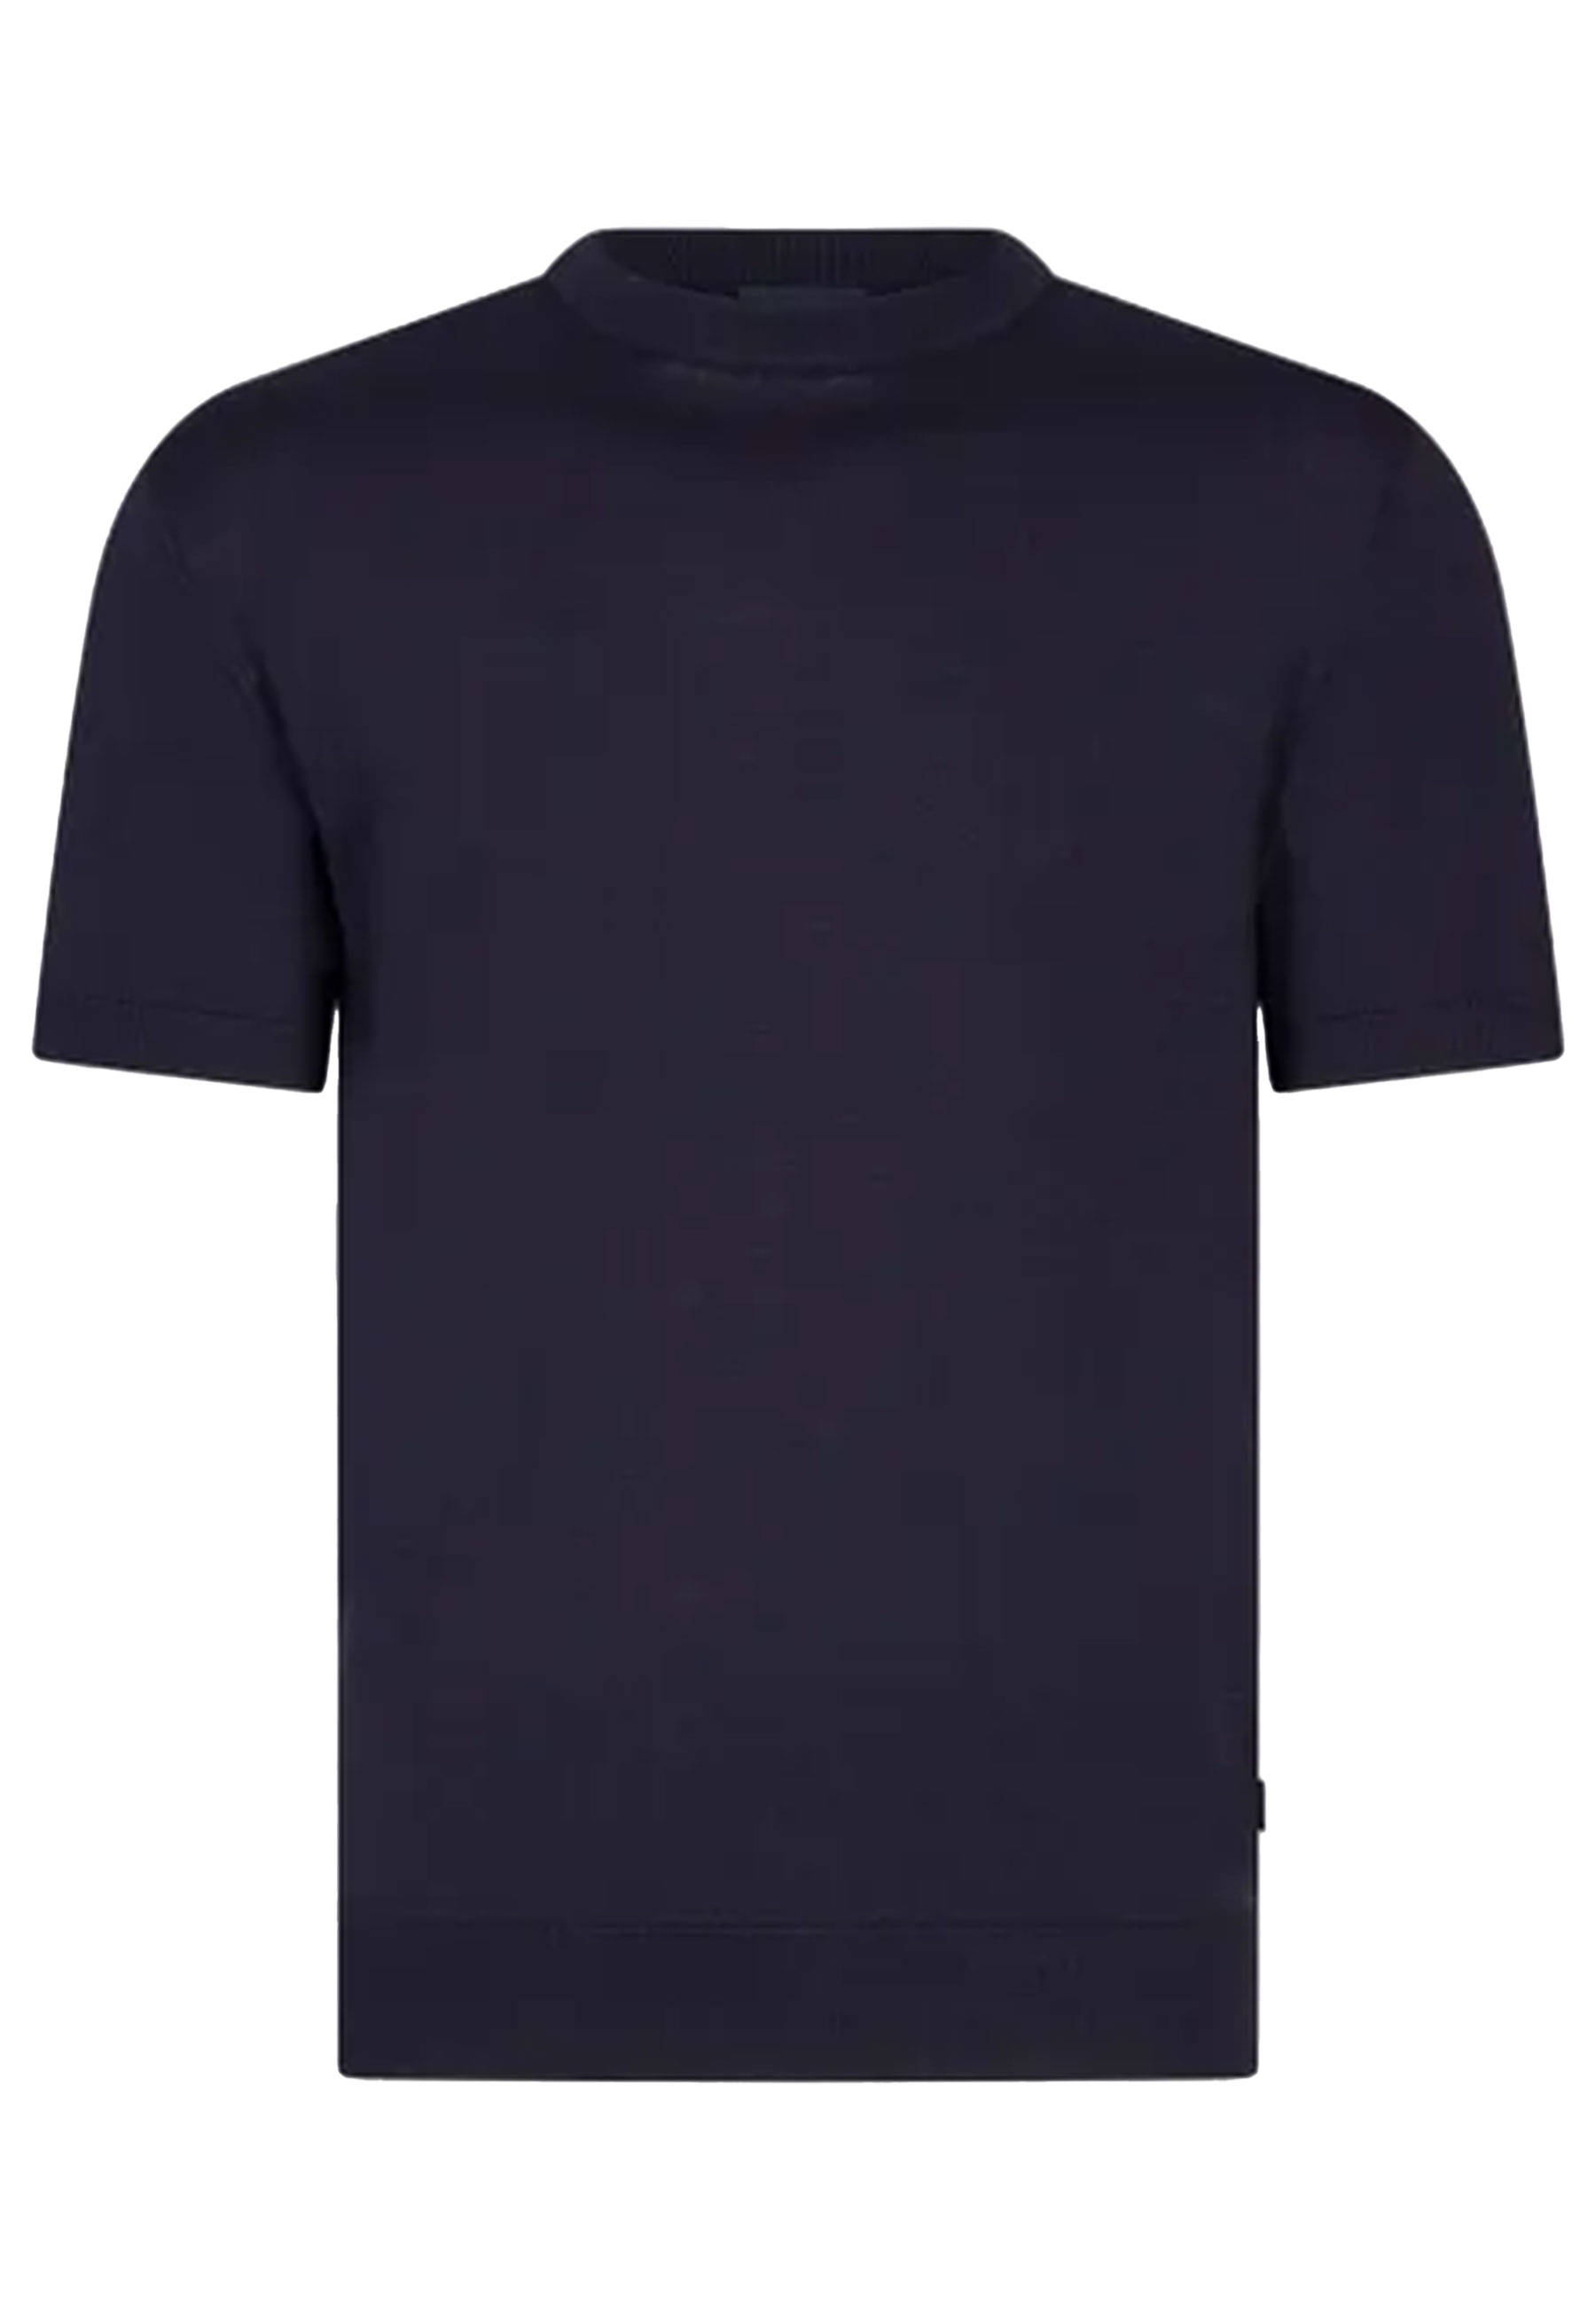 Shirt Donkerblauw Milo t-shirts donkerblauw